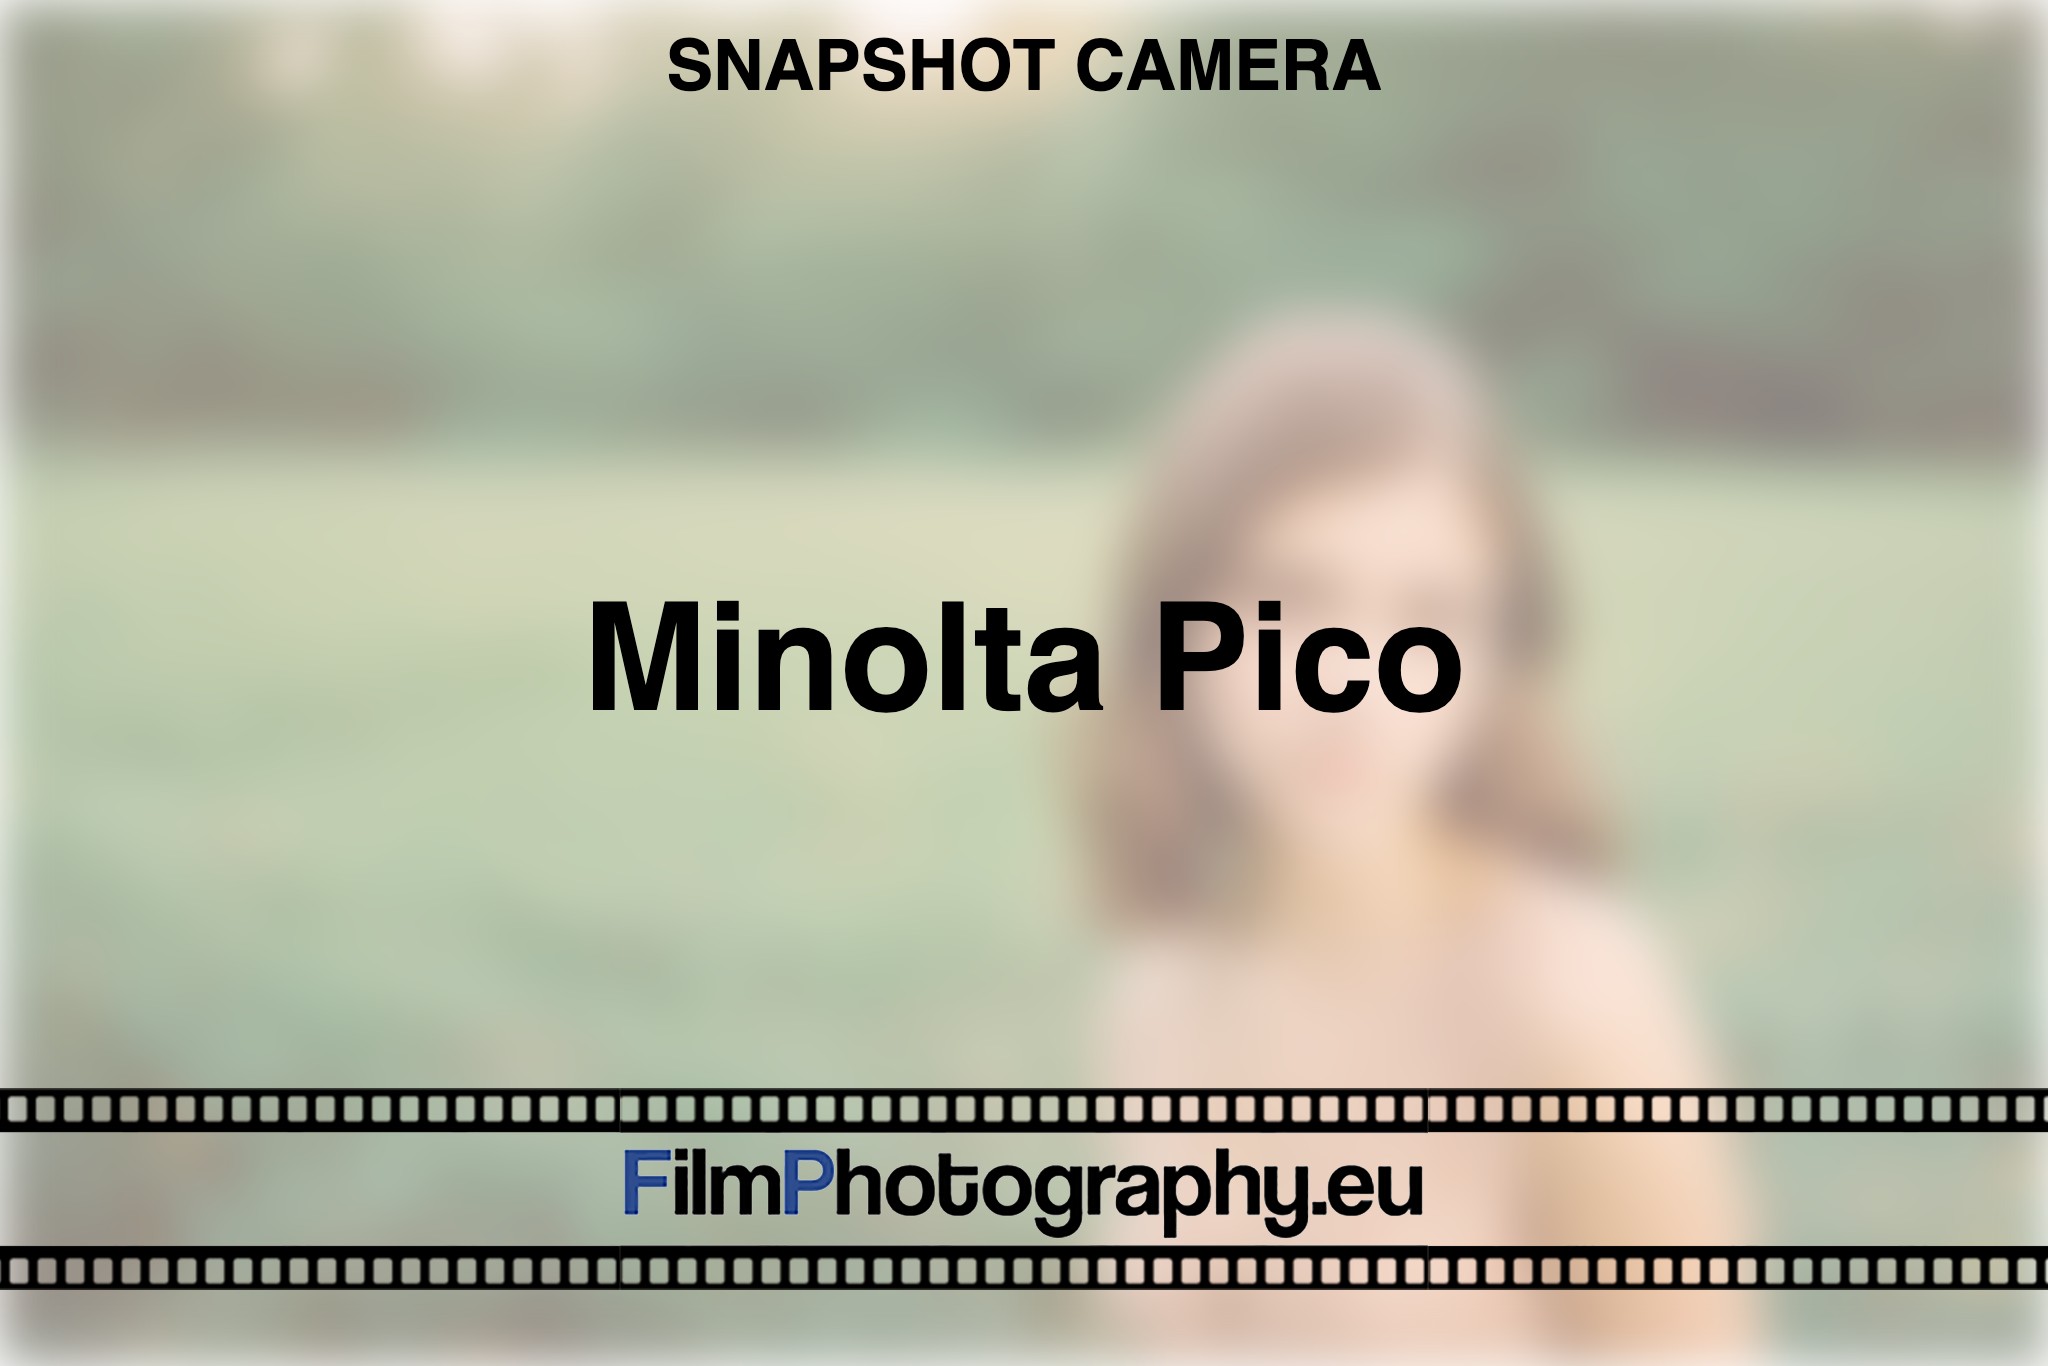 minolta-pico-snapshot-camera-bnv